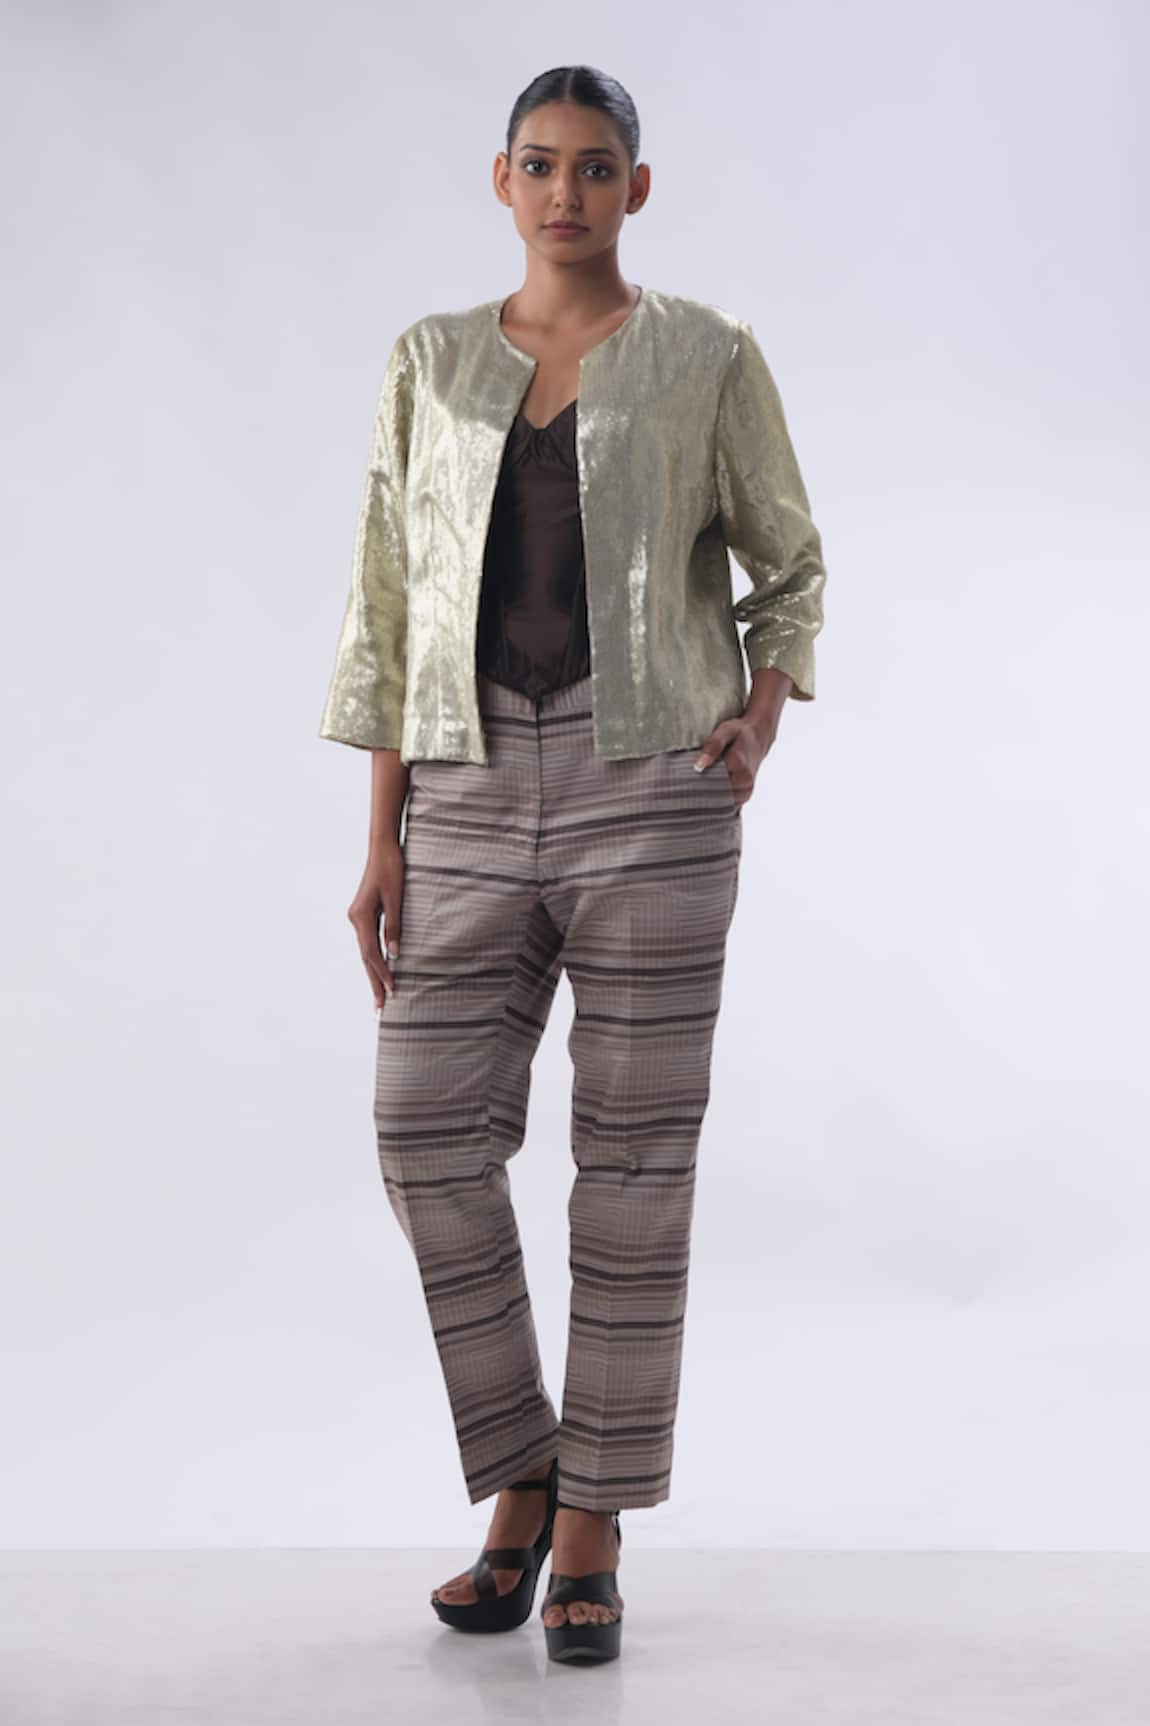 Kommal Sood Sequin Embellished Short Jacket With Trouser